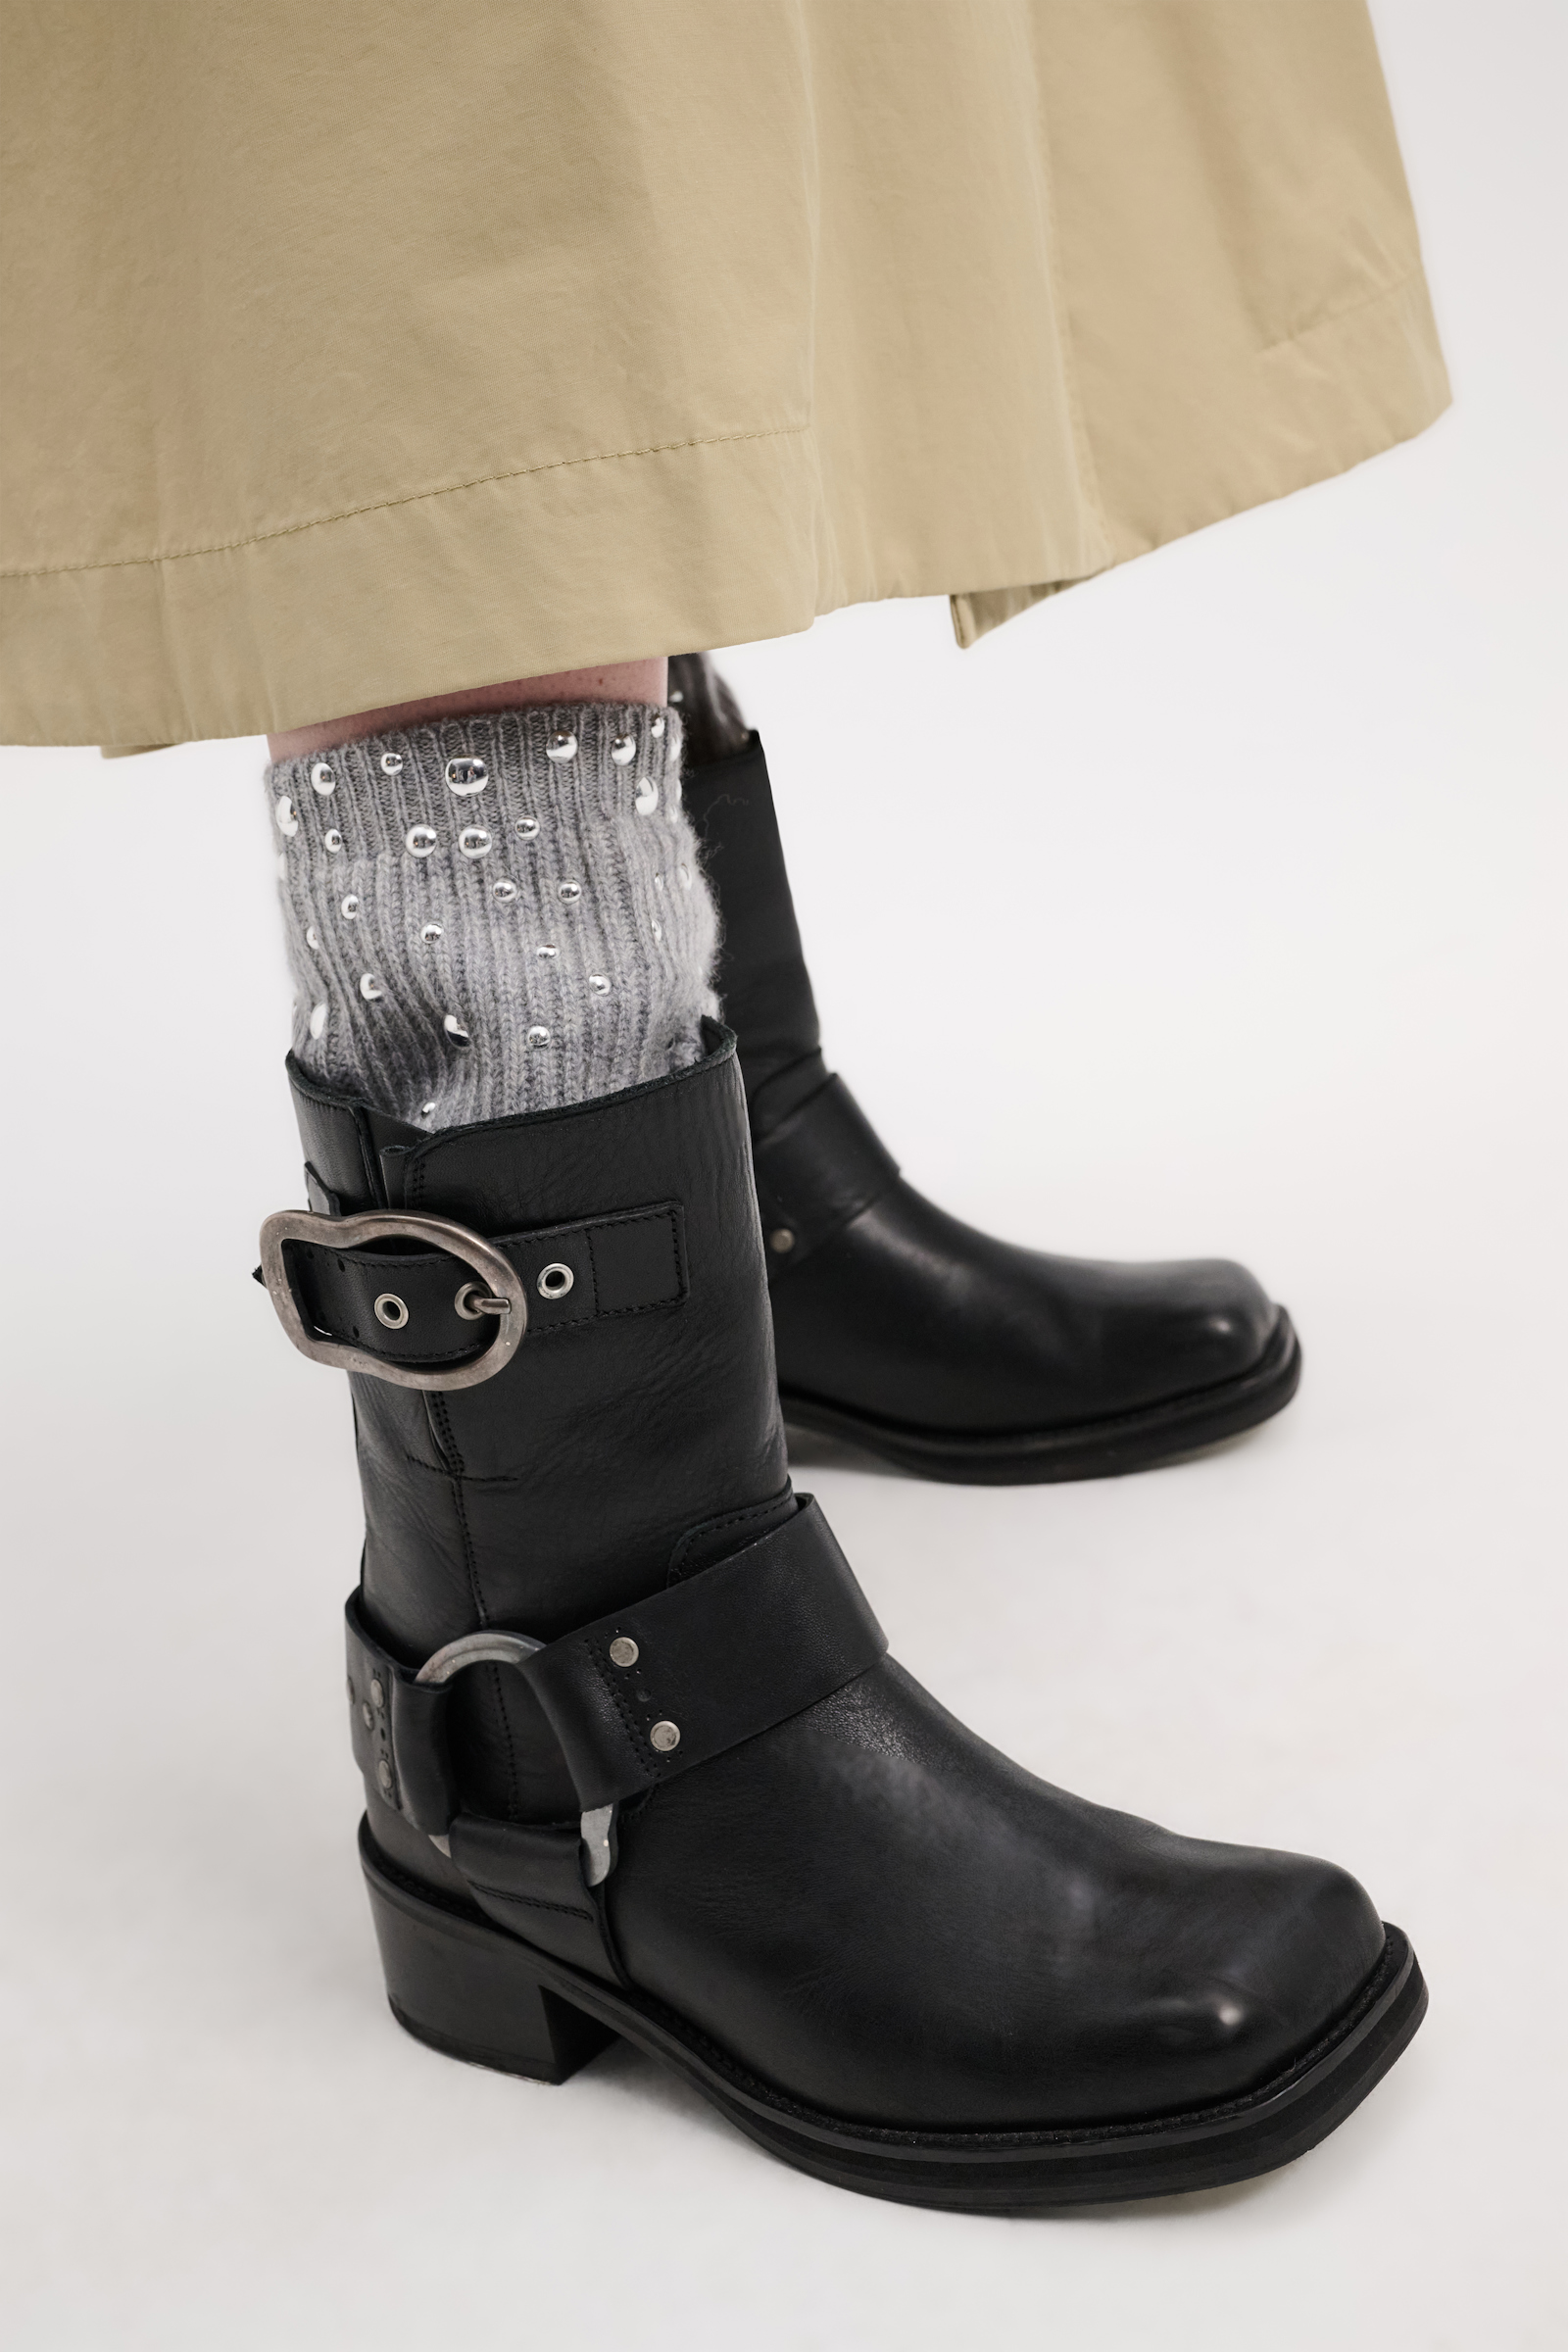 Dorothee Schumacher Stud-embellished cashmere leg warmers cool grey melange